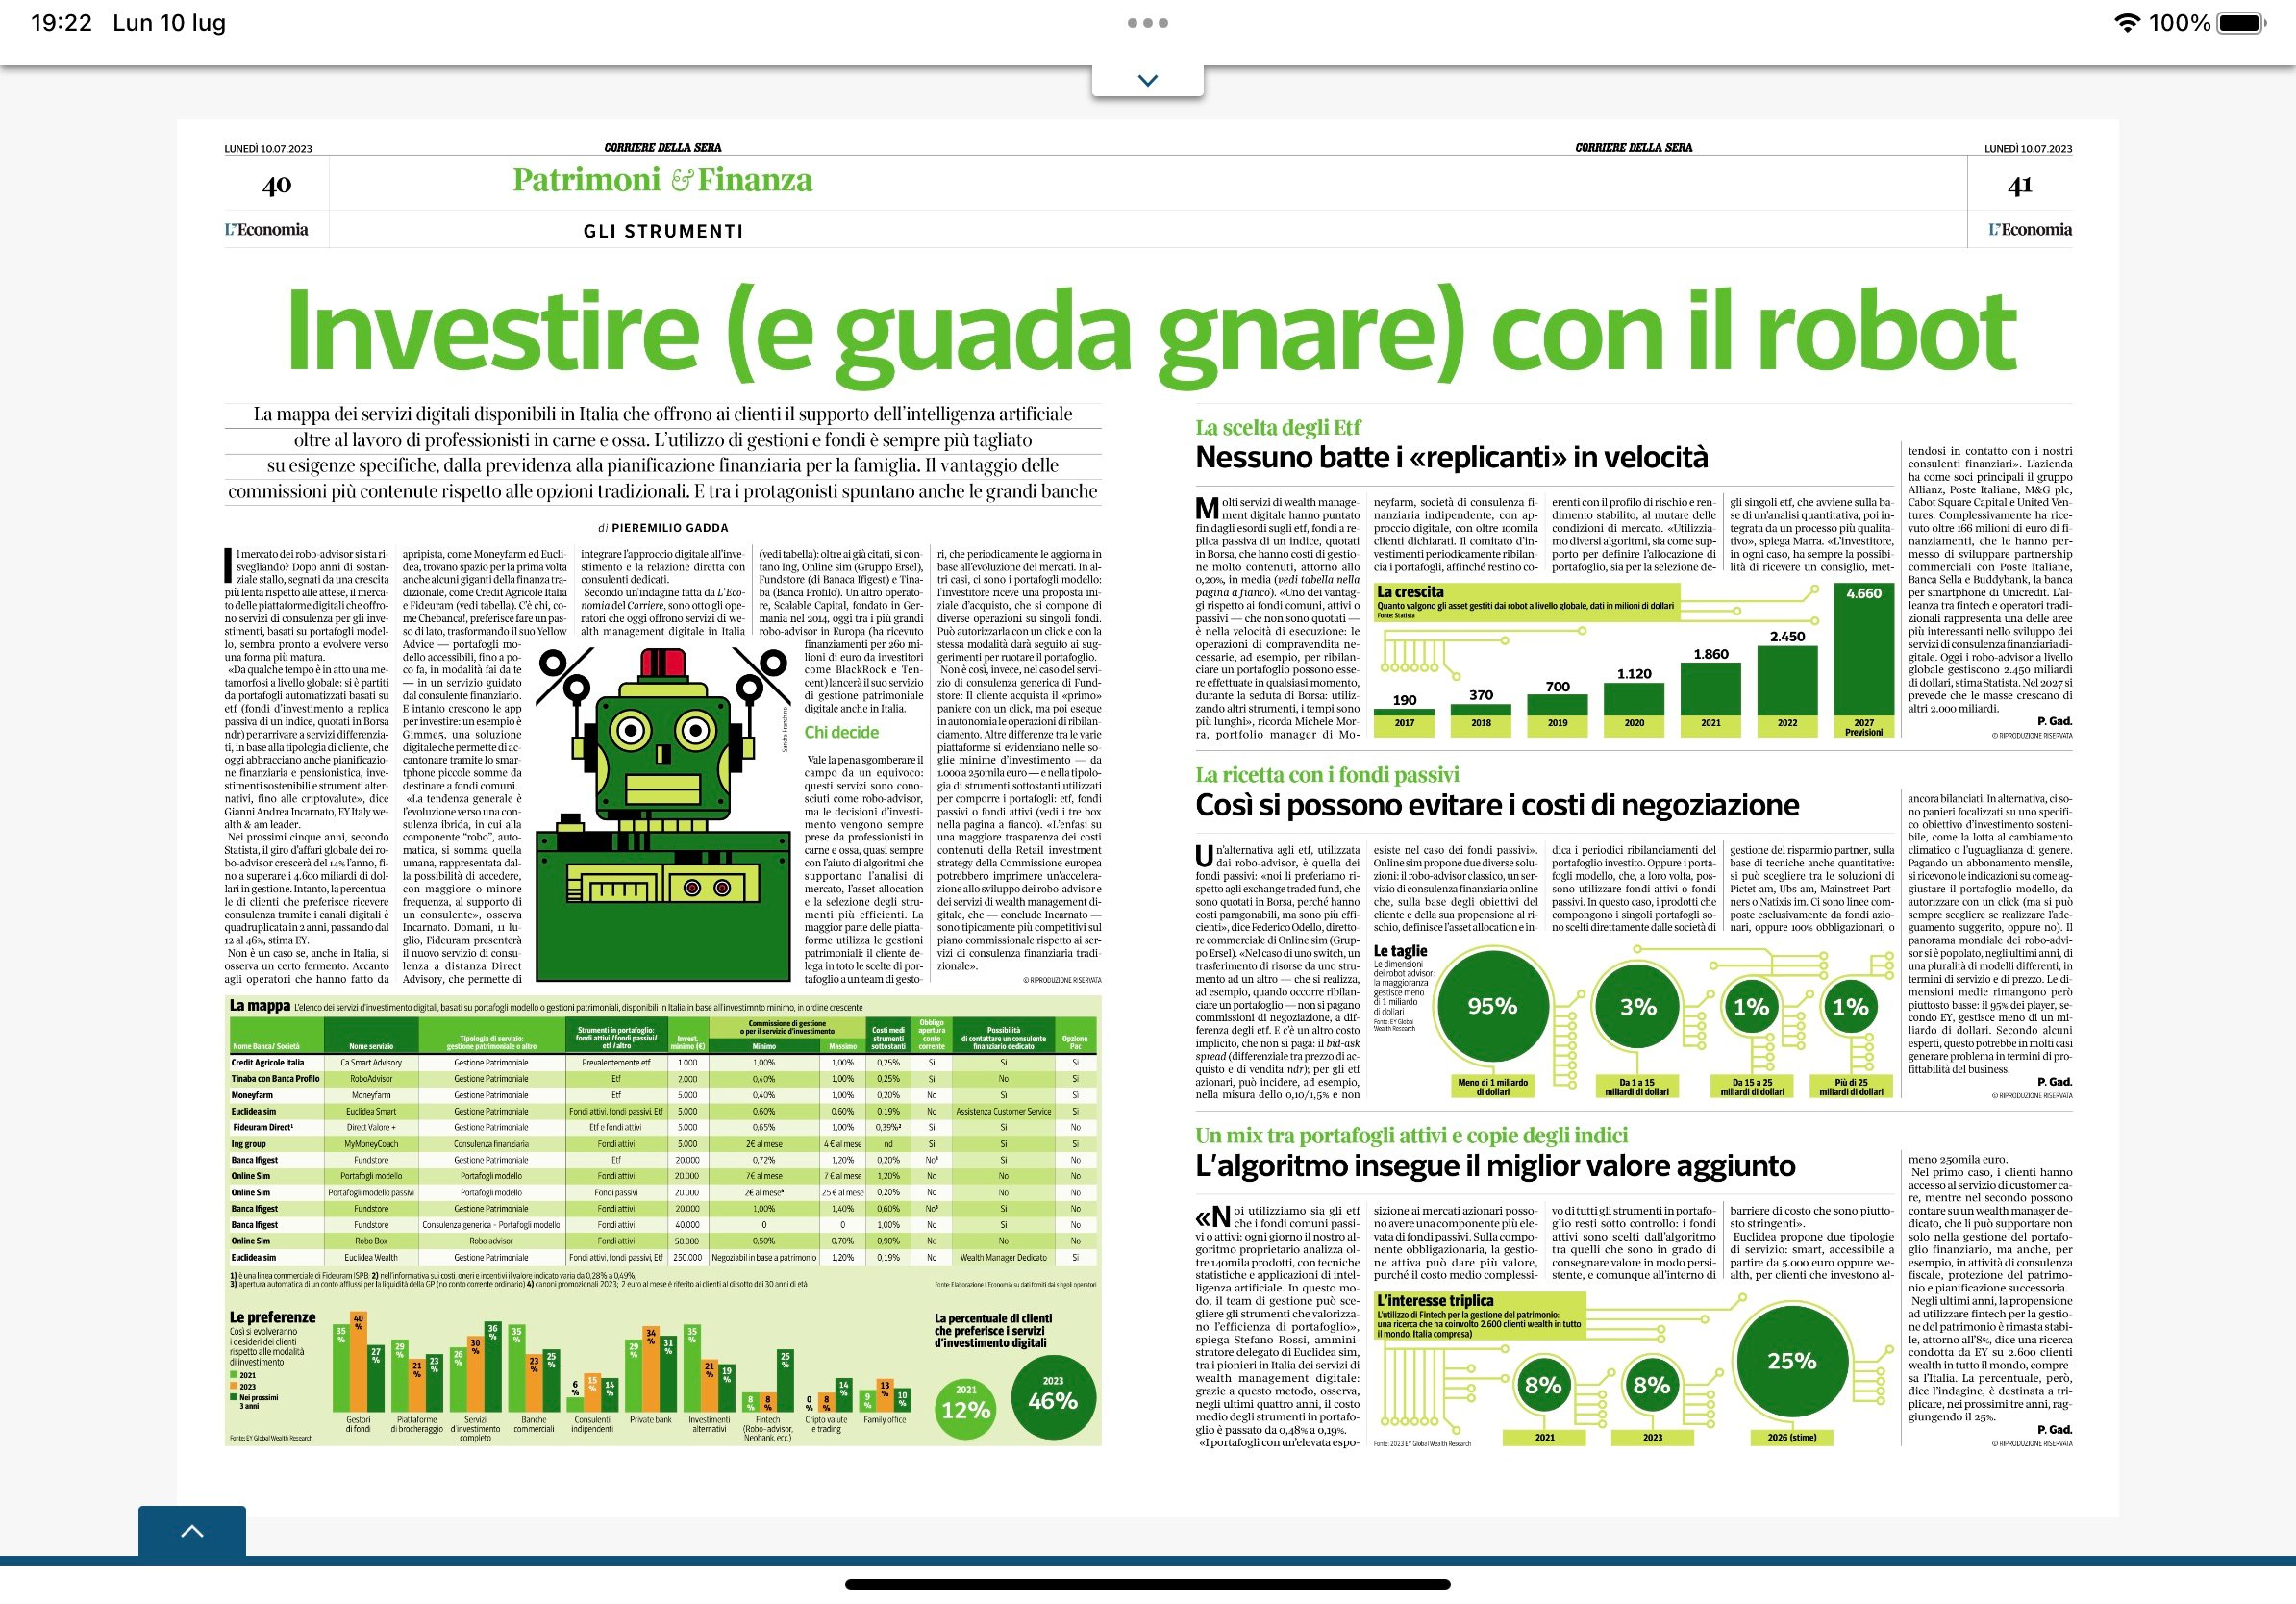 Corriere Economia - investire e guadagnare con il robot1